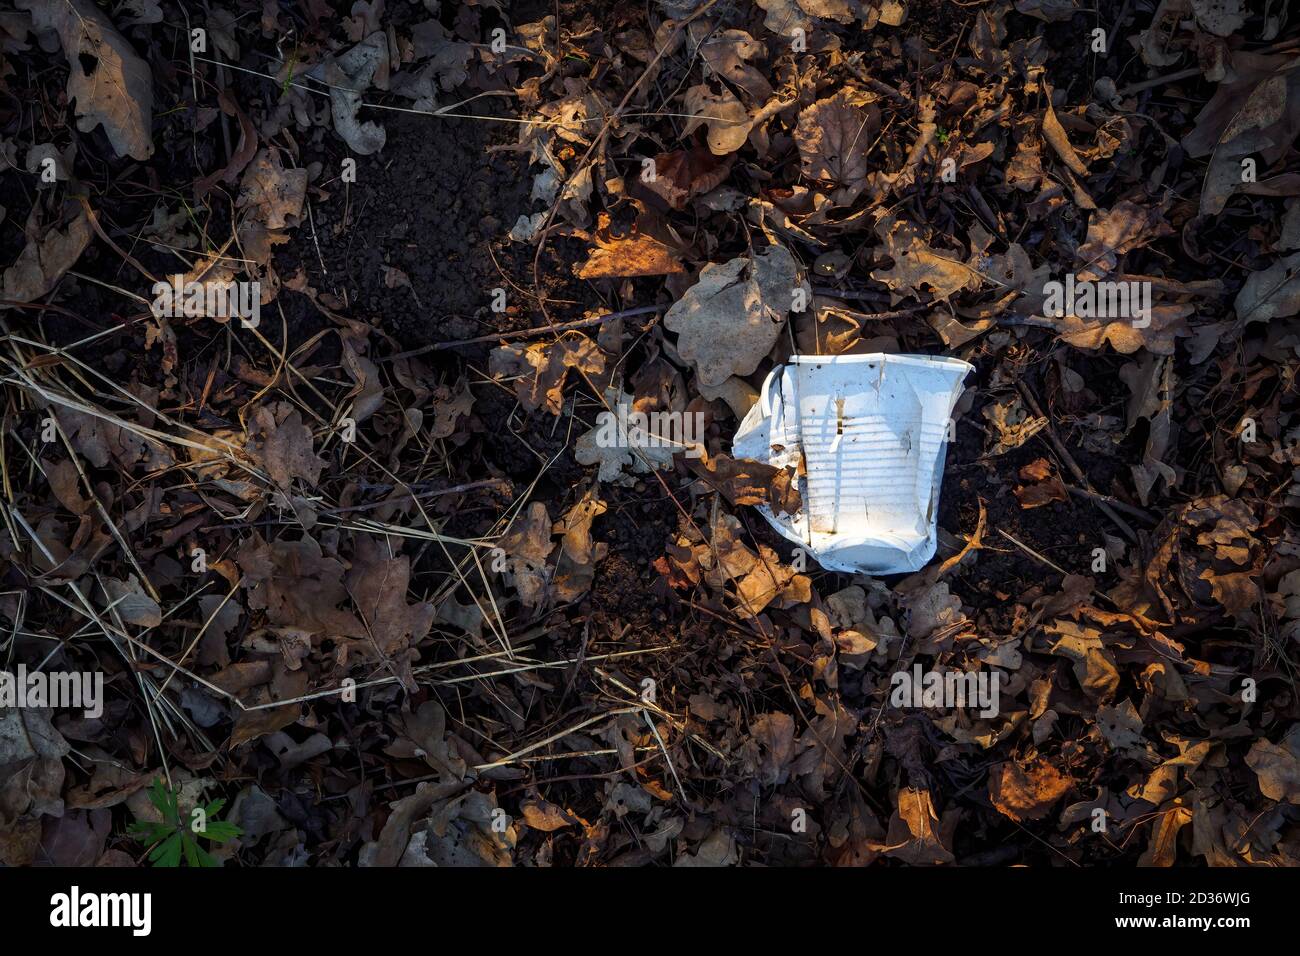 Gobelet en plastique blanc cassé au sol entre les feuilles brunes sèches. Concept de pollution environnementale. Espace de copie, vue de dessus Banque D'Images